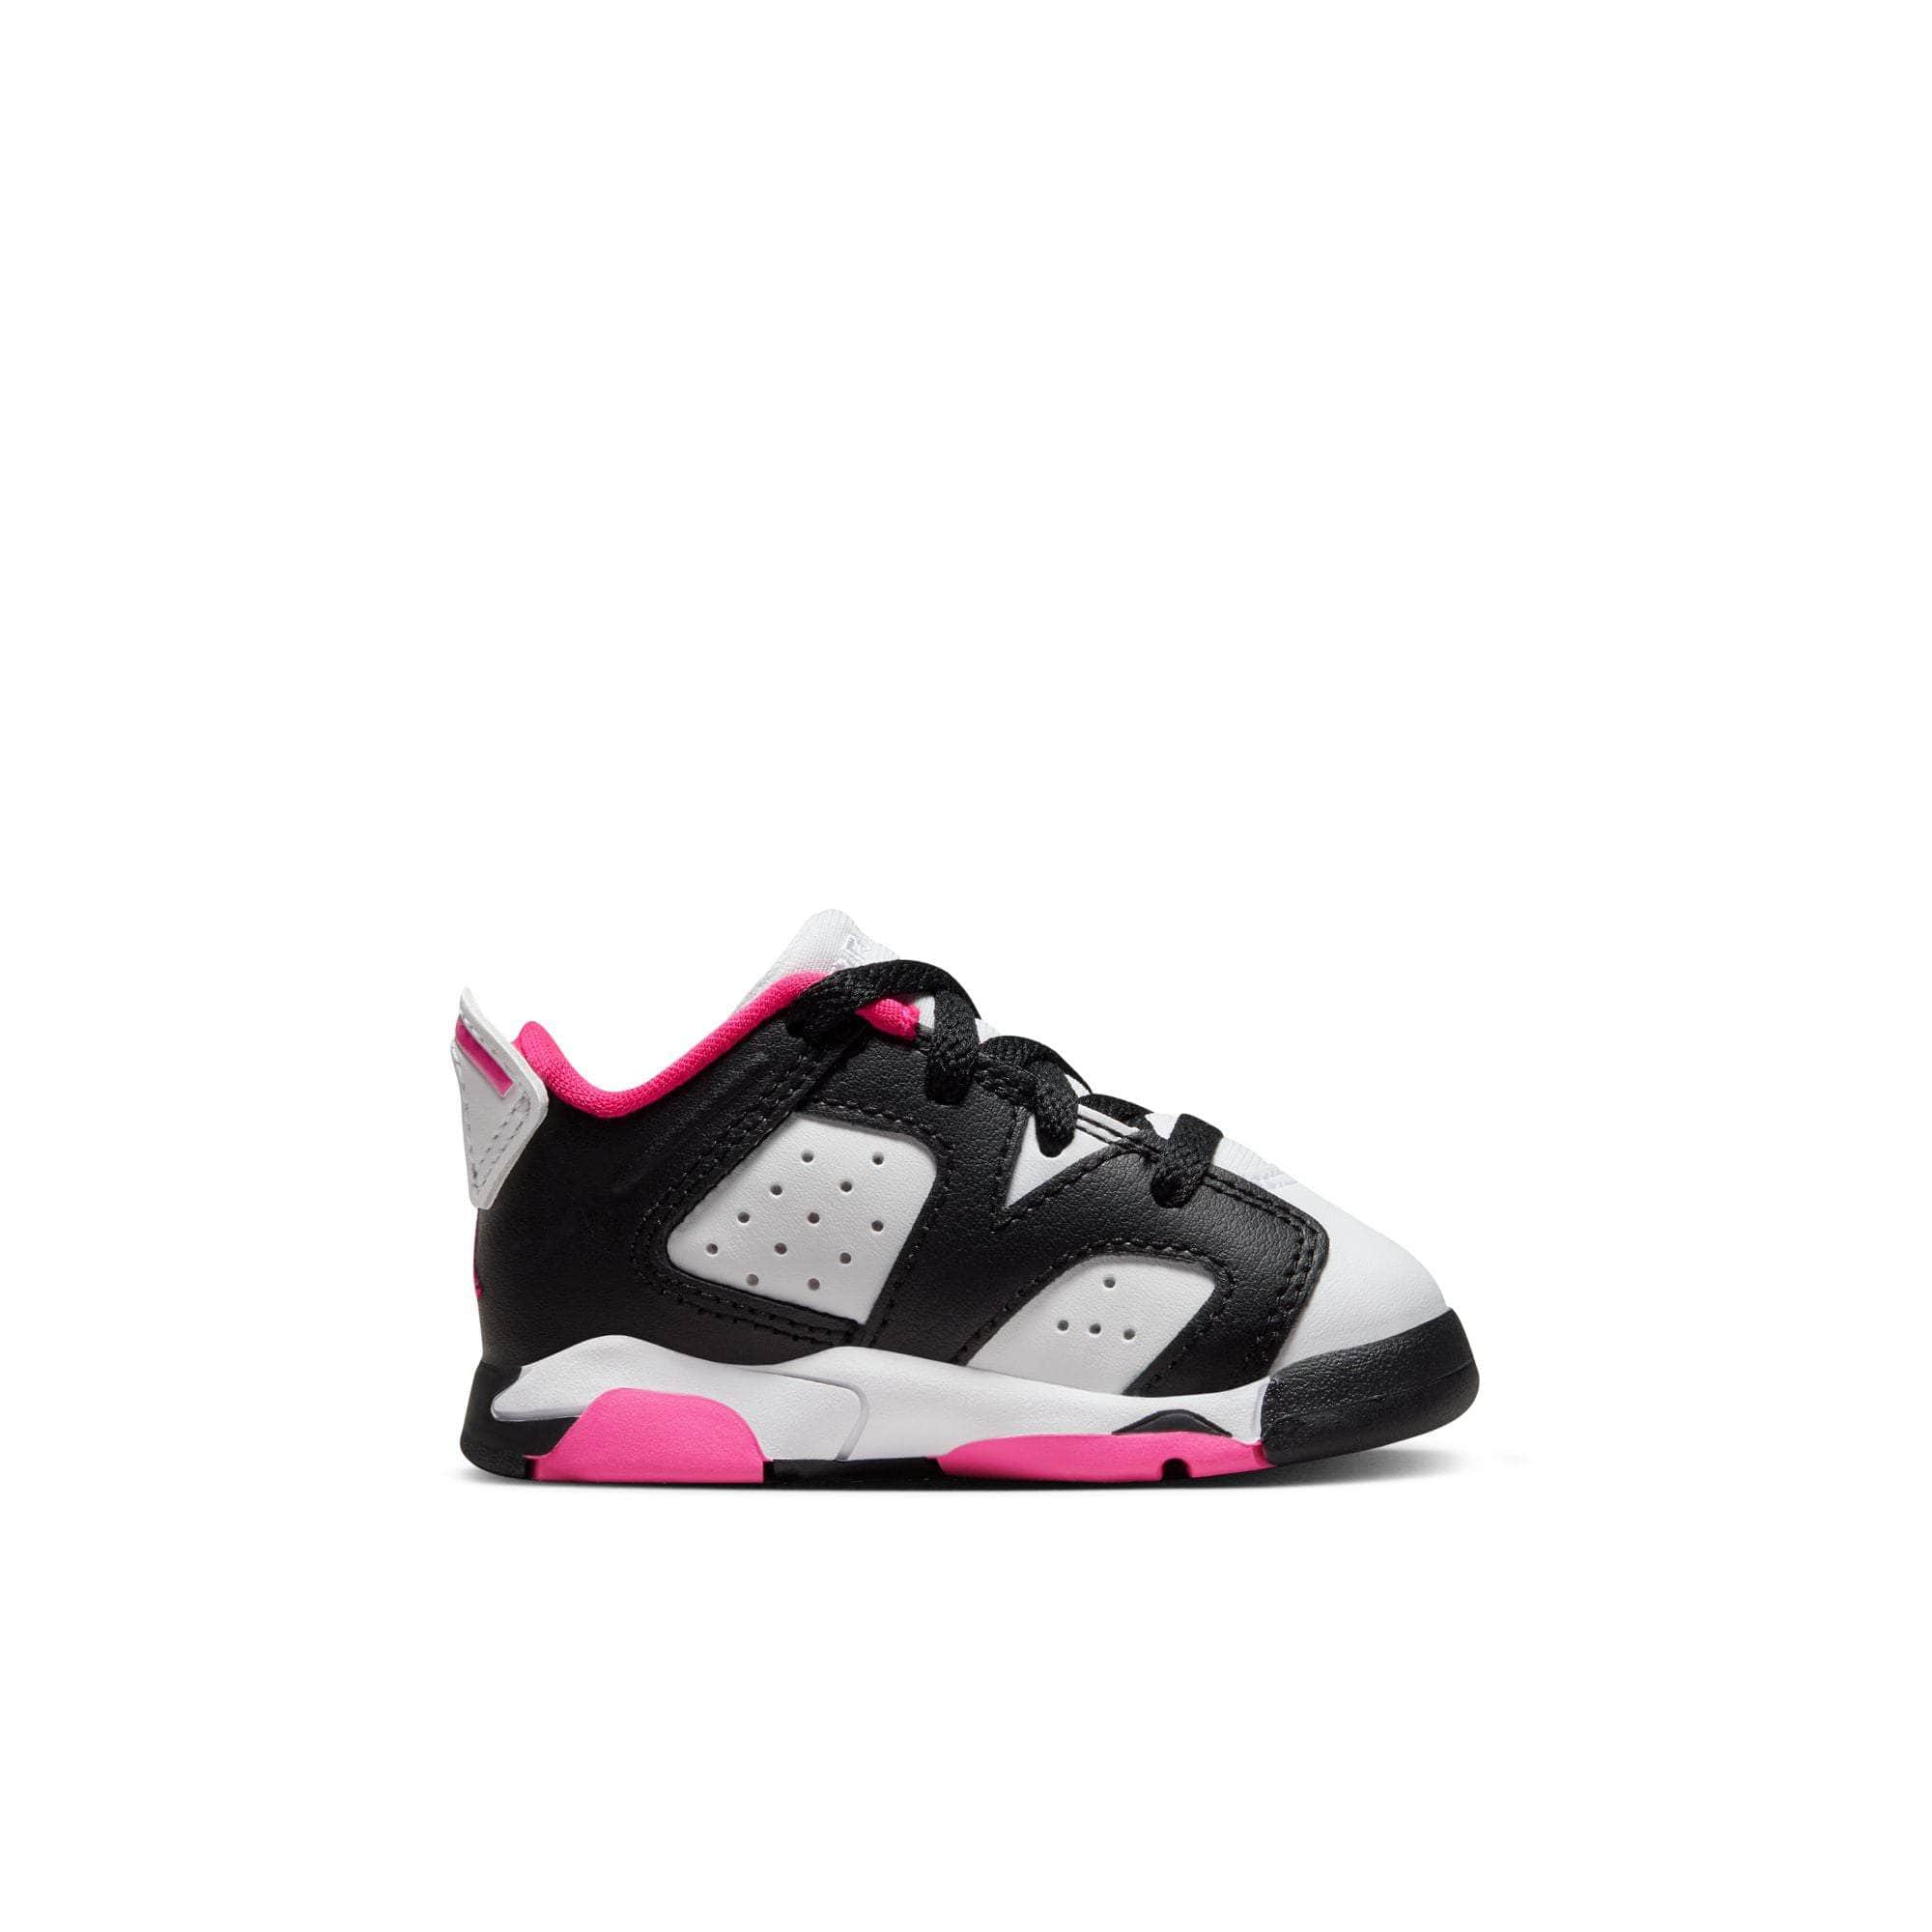 Air Jordan FOOTWEAR Air Jordan 6 Retro Low "Fierce Pink" - Toddler's TD